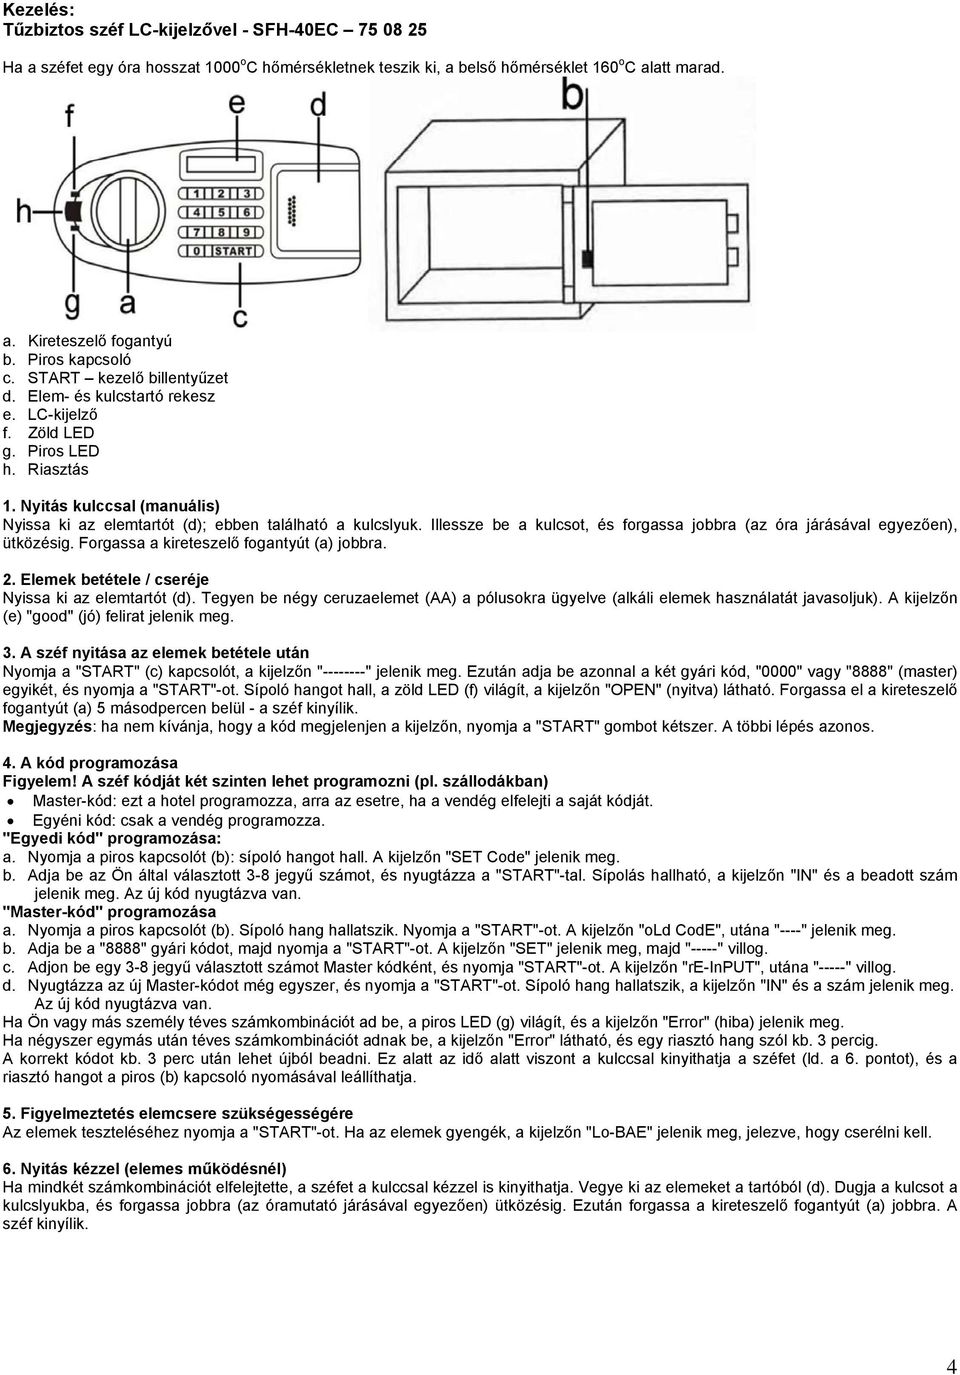 Használati útmutató különböző széfekhez: - PDF Ingyenes letöltés